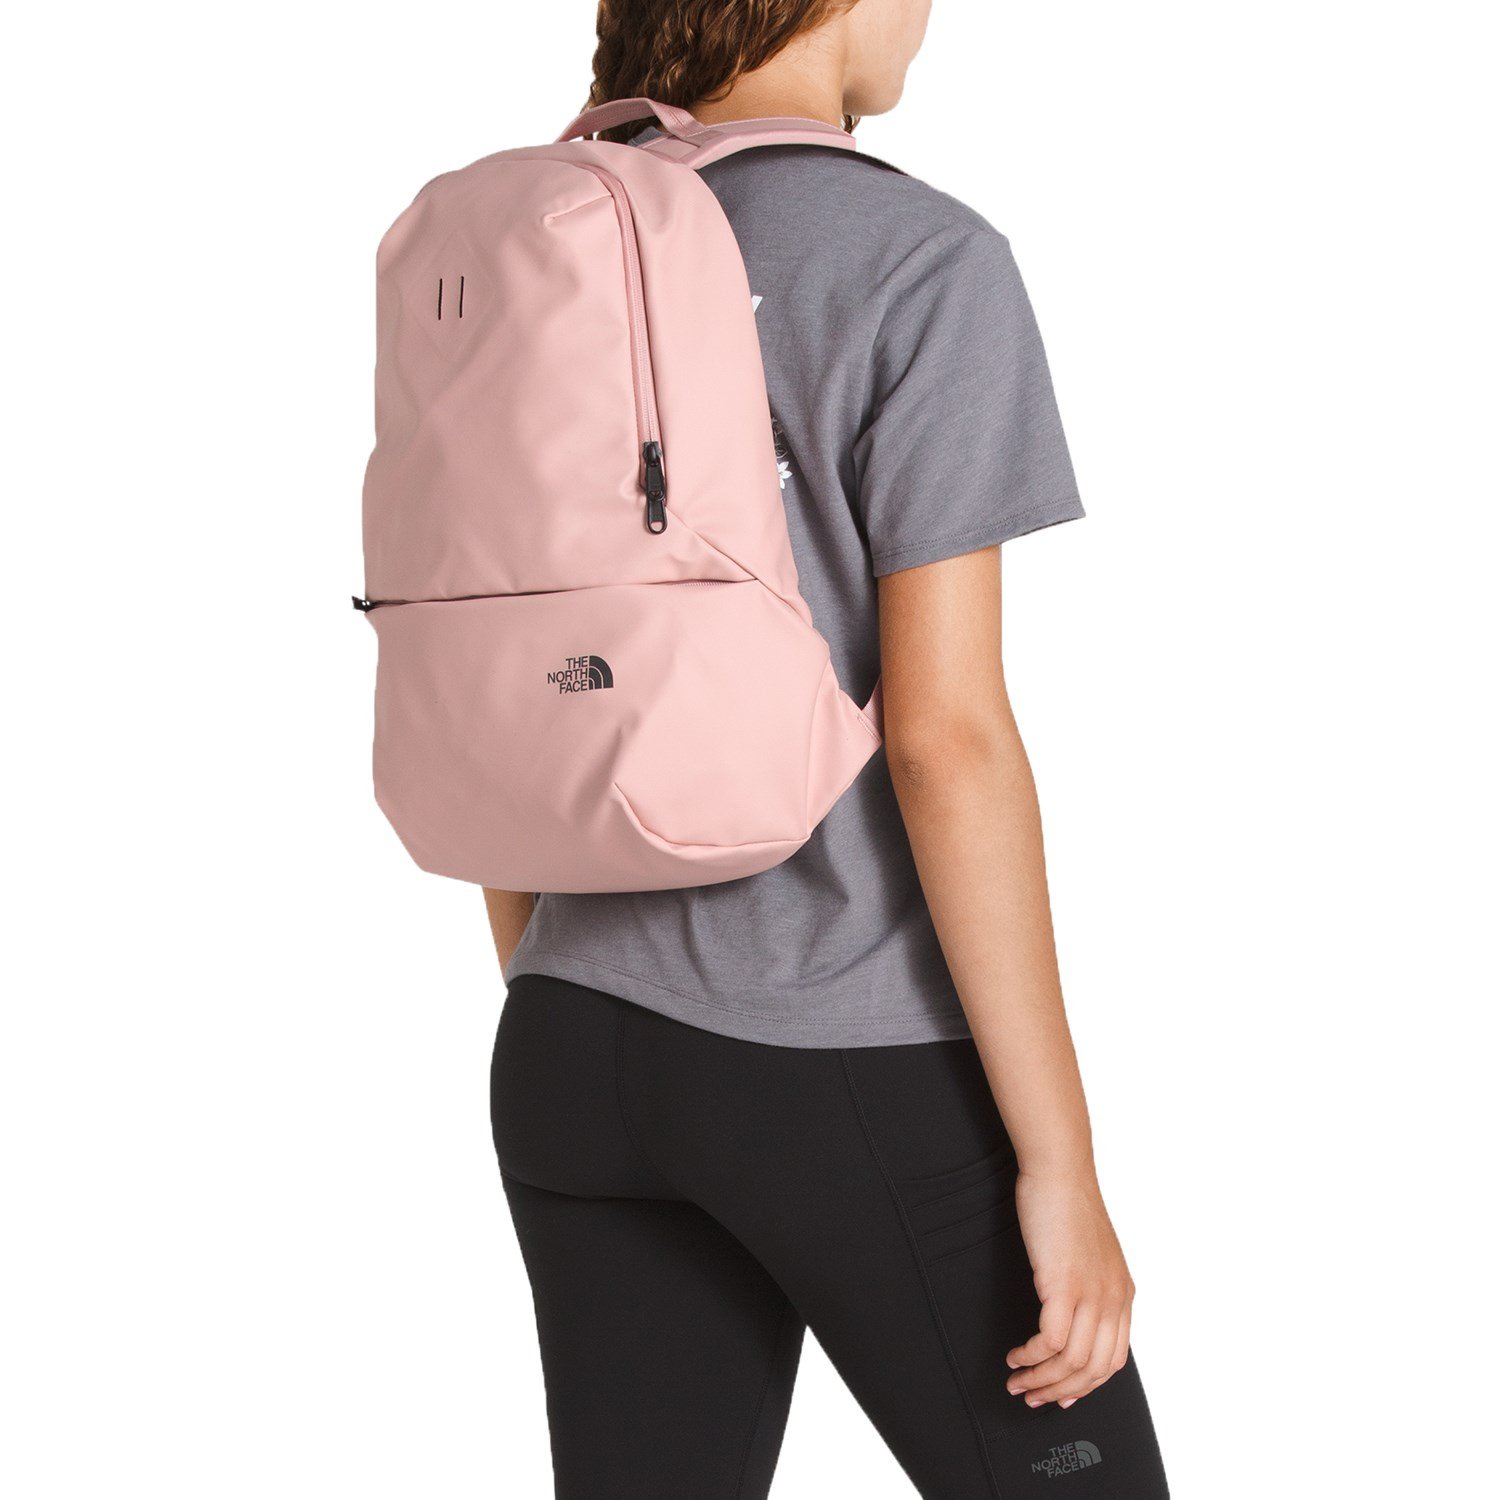 bttfb backpack